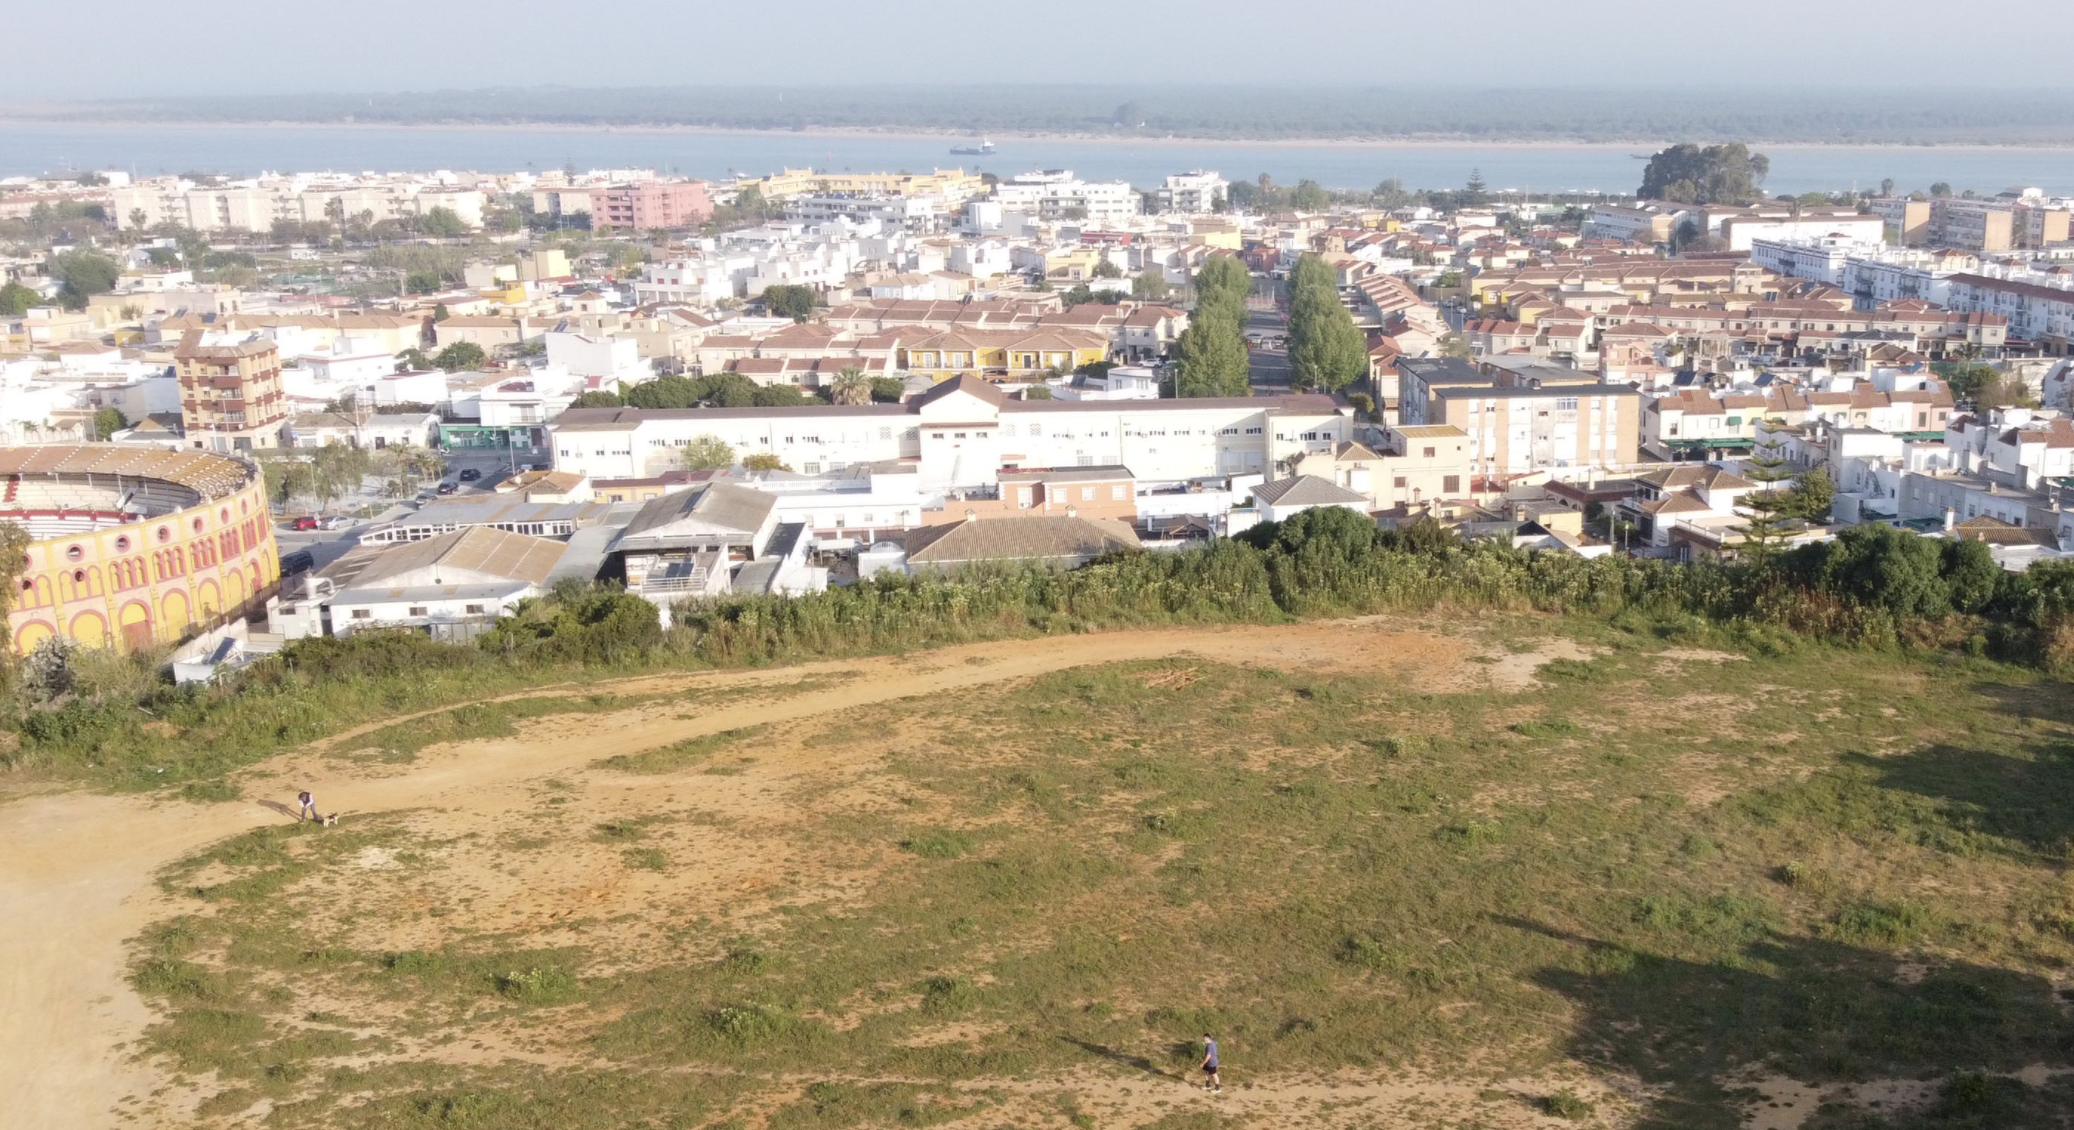 Espacio libre de Pino Alto, donde Sanlúcar ha proyectado el parque Mirador del V Centenario.